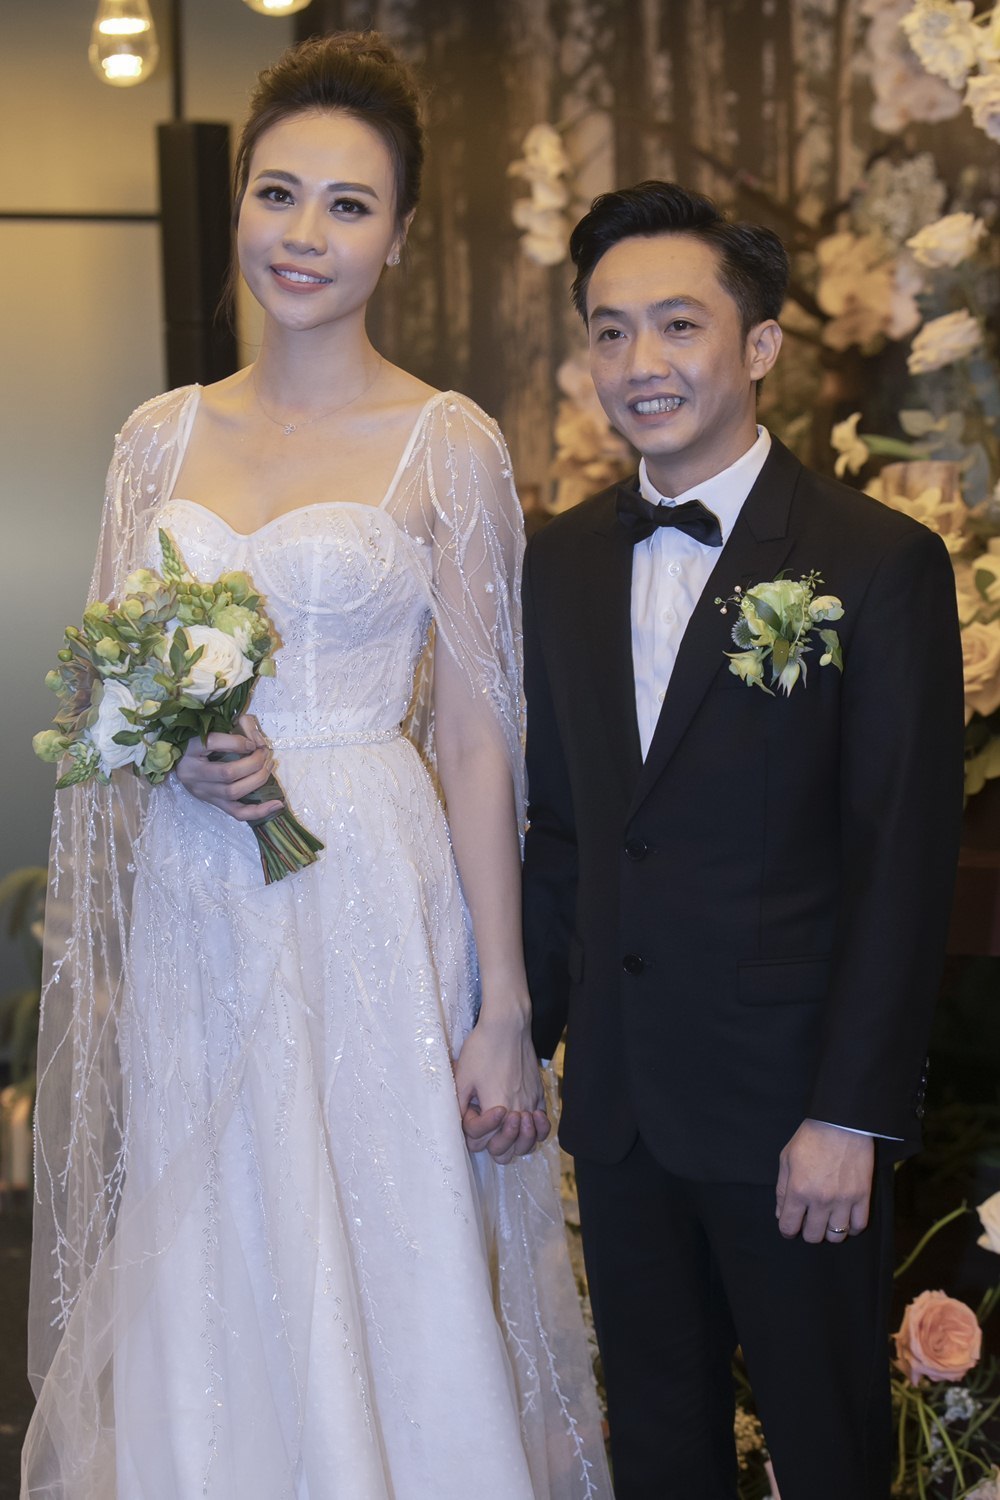  
Đám cưới đình đám không kém thời gian qua là Cường Đôla và Đàm Thu Trang. Trong khi bà xã lộng lẫy với chiếc váy cưới phong cách nữ thần thì "đại gia phố núi" chọn suit đen đơn giản. 